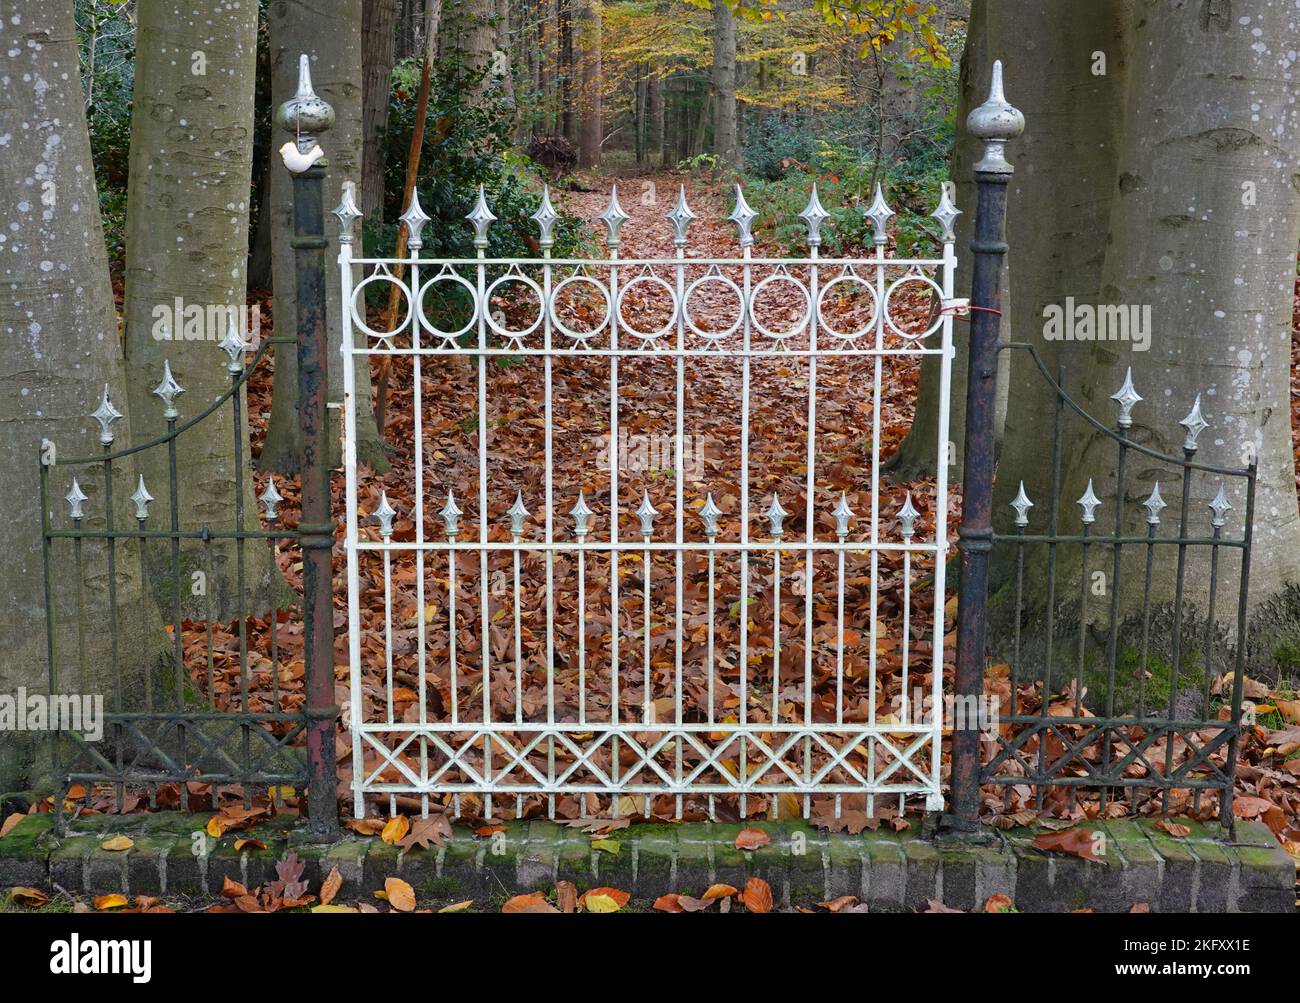 Puerta de hierro fundido bellamente decorada que da acceso a un sendero forestal en otoño Foto de stock